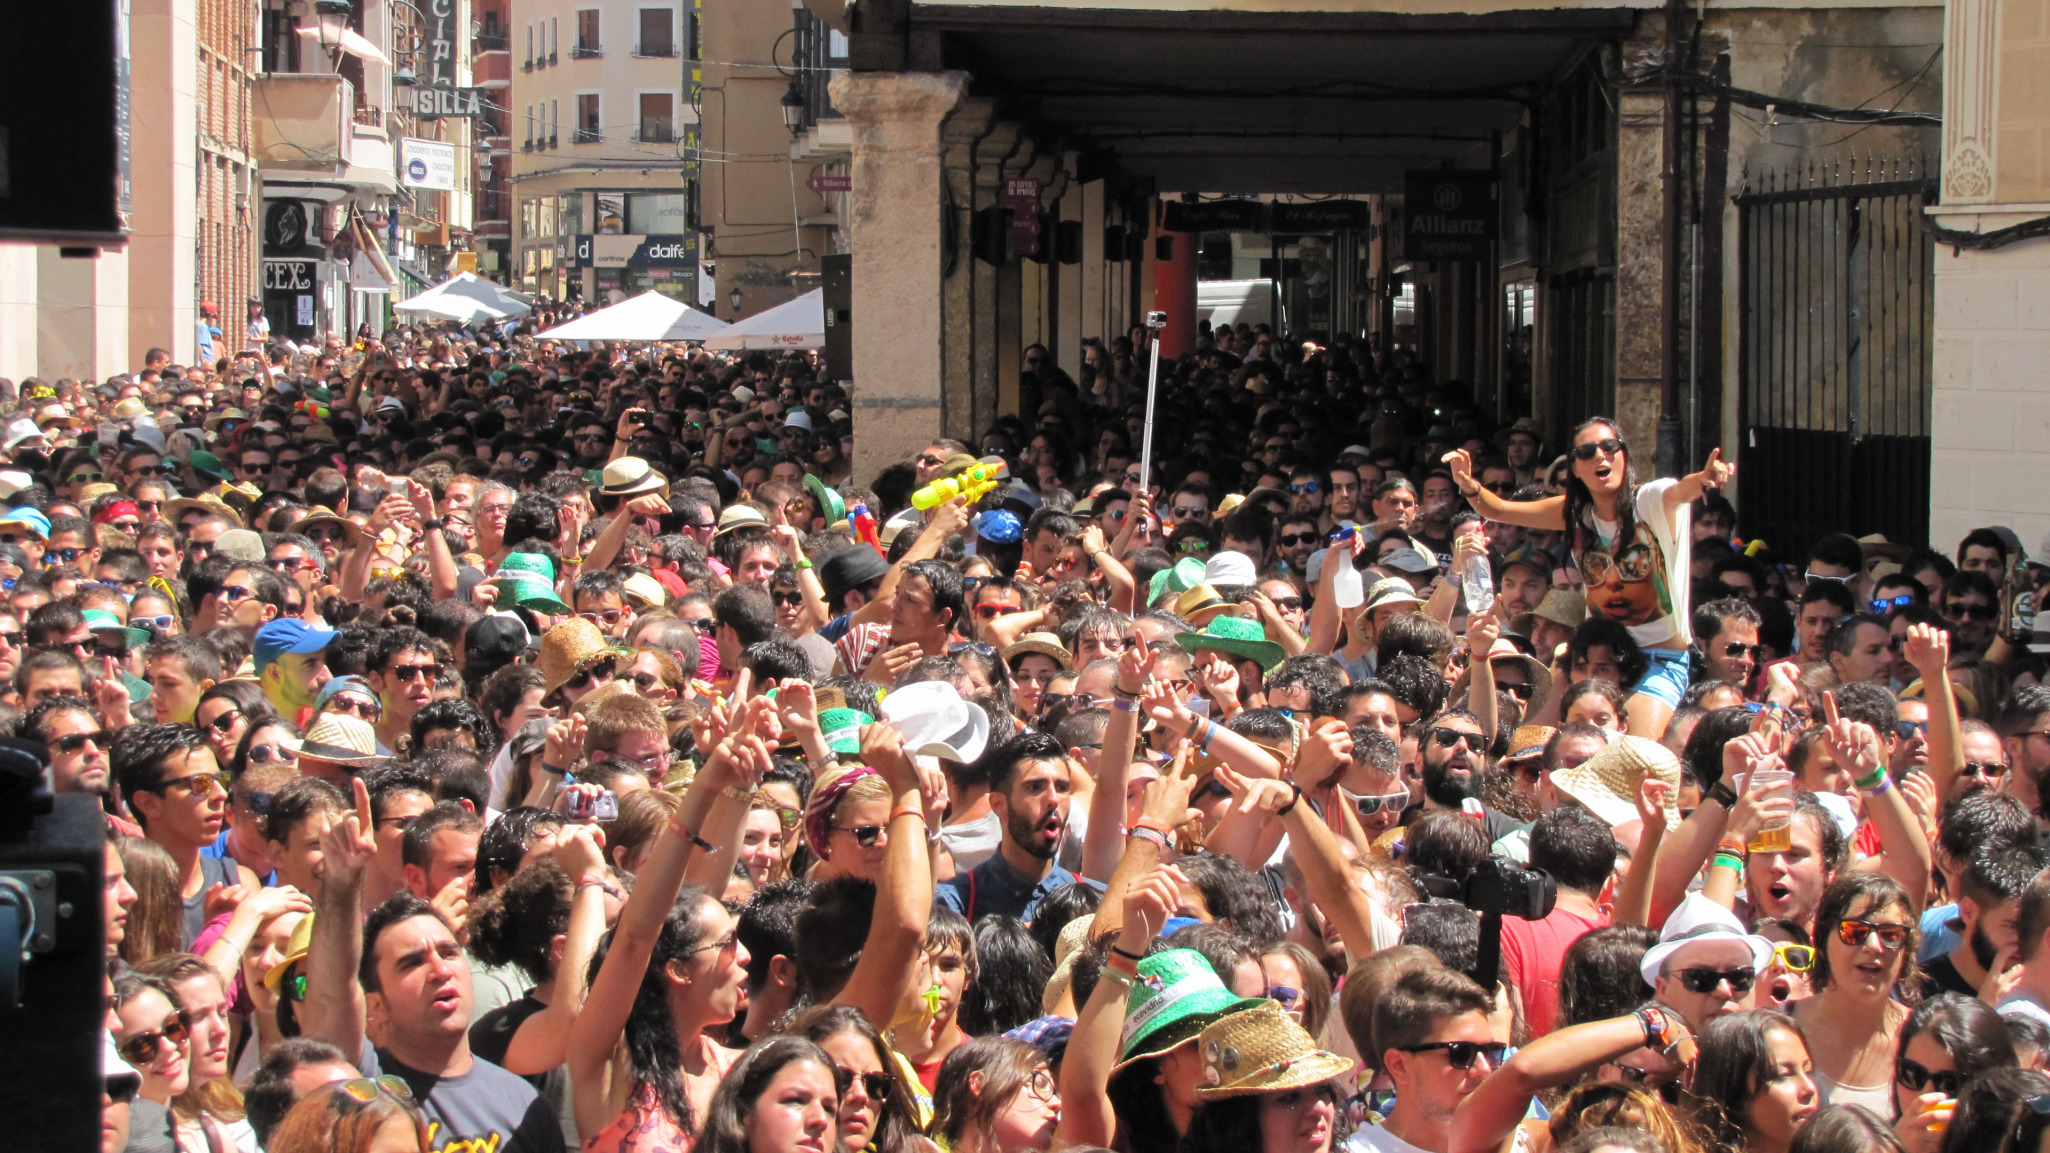 Sonorama Ribera emite un emotivo comunicado sobre la realización del Festival en 2020